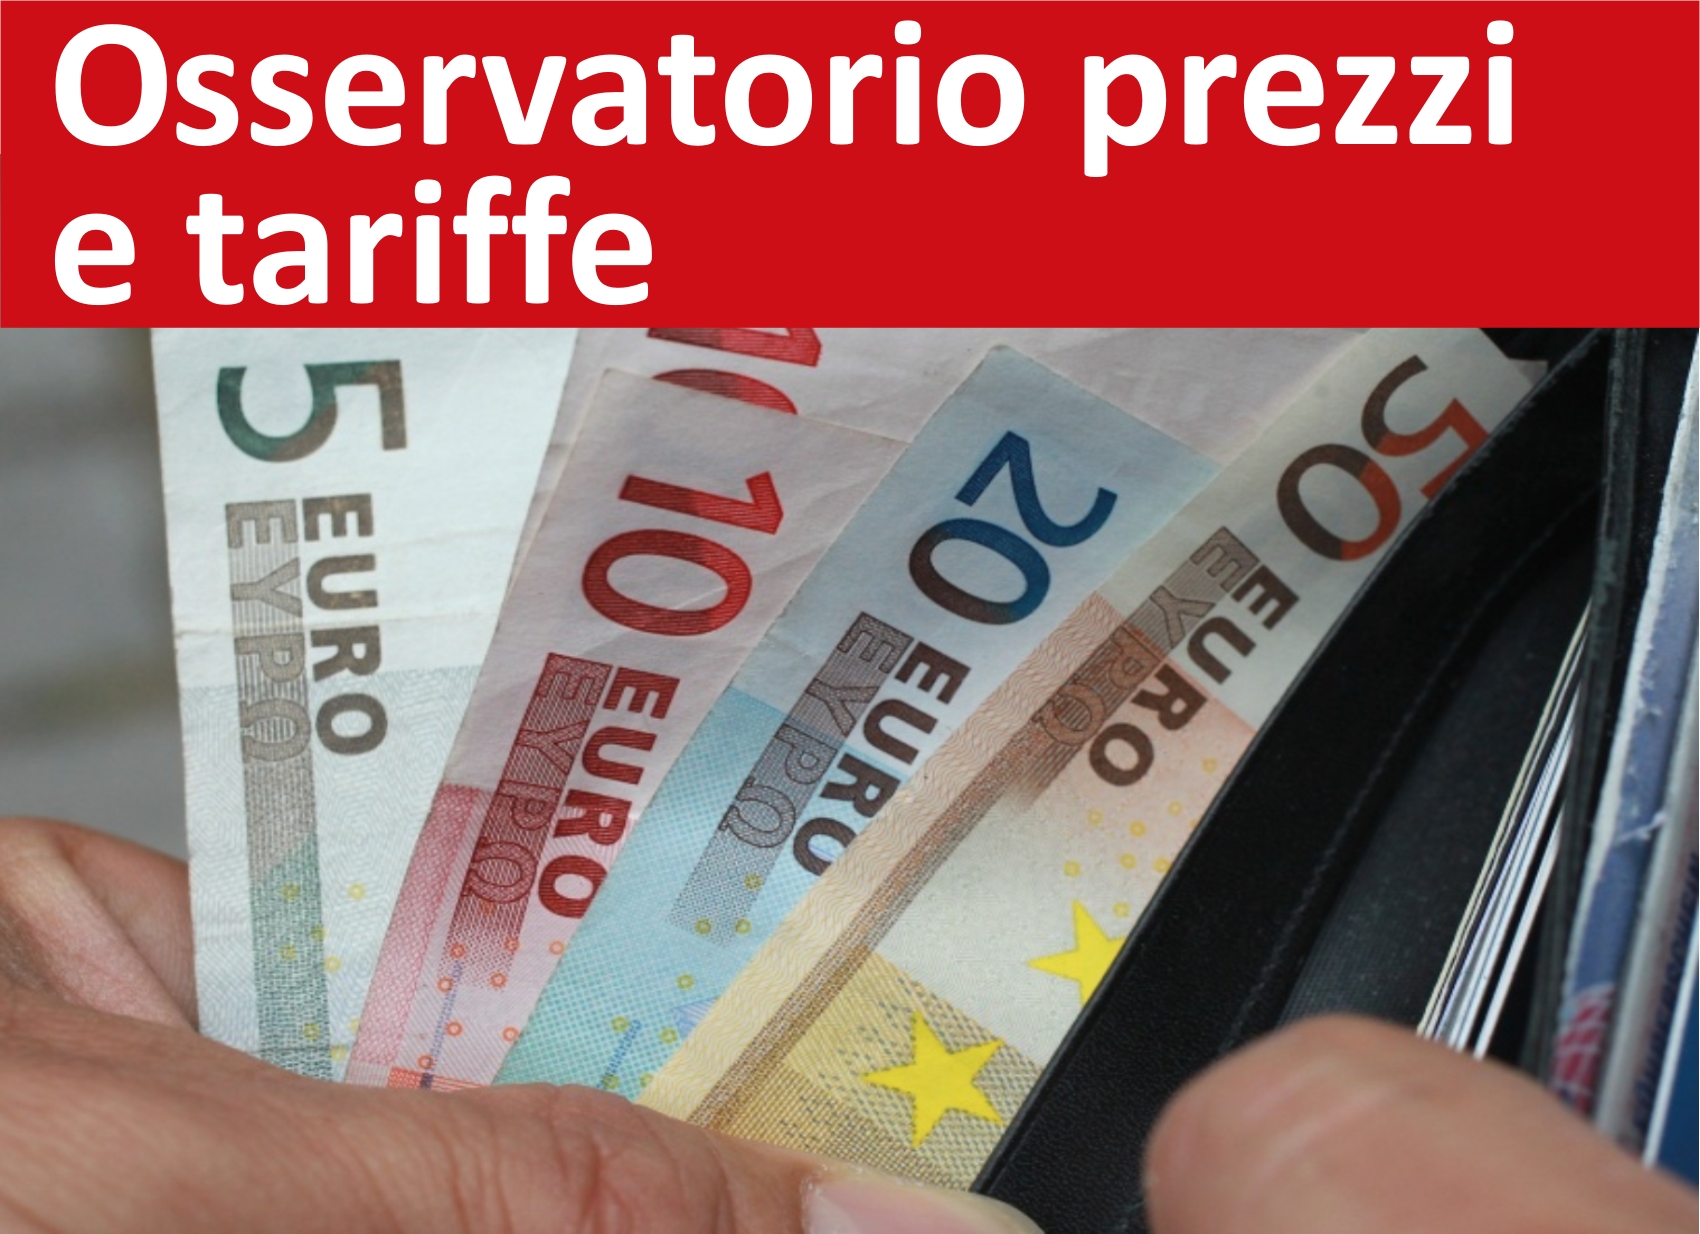 Osservatorio prezzi e tariffe della Provincia Autonoma di Bolzano